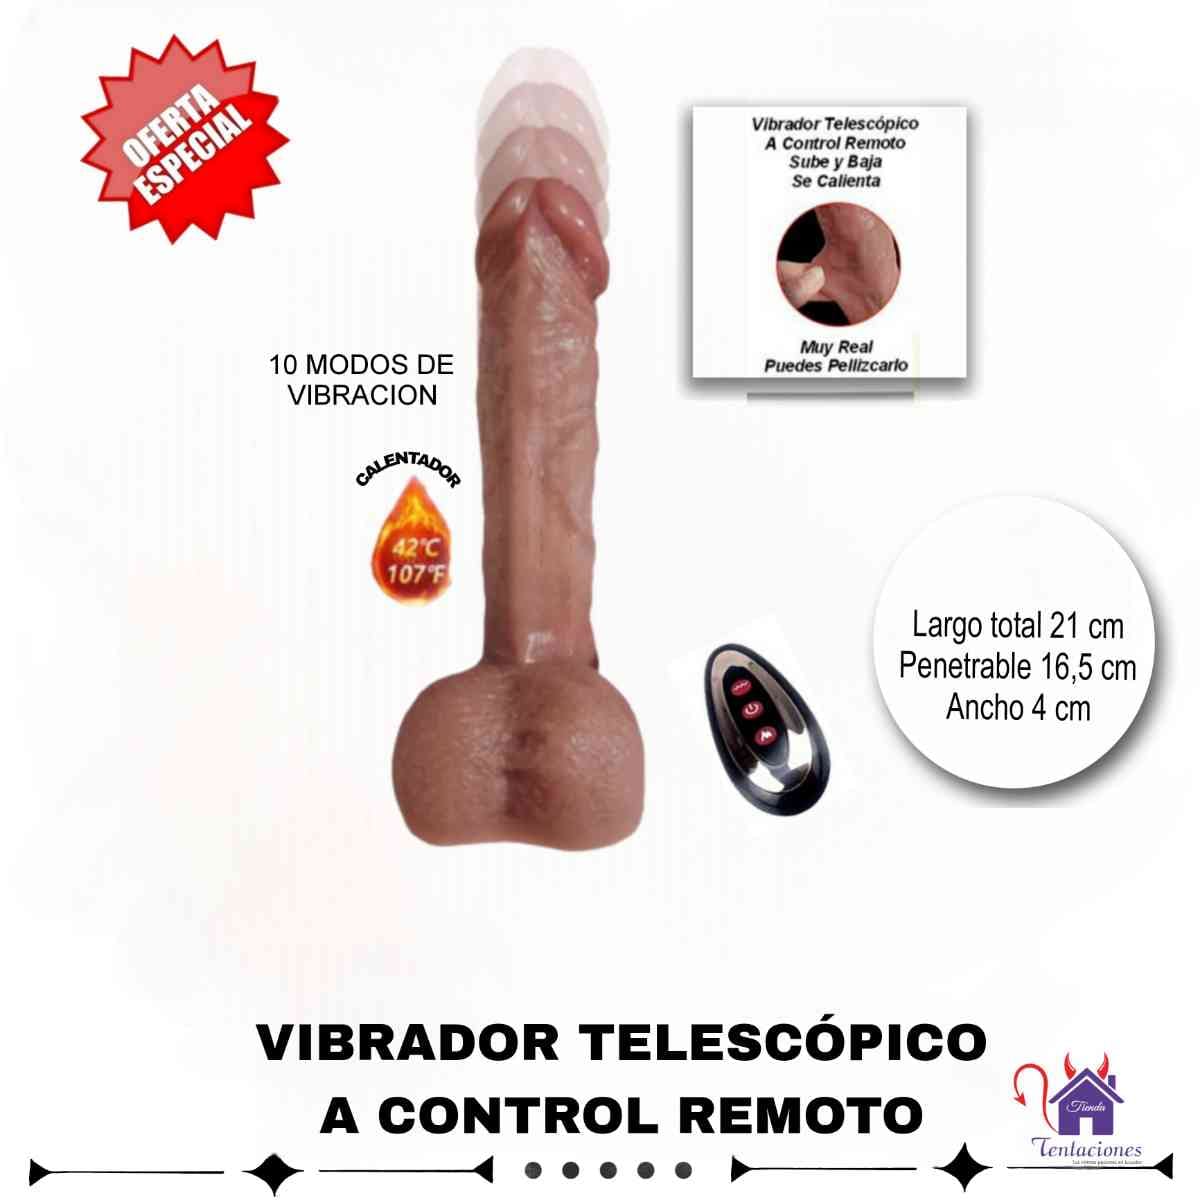 Vibrador Telescopico- Tienda Tentaciones- Sex Shop Ecuador